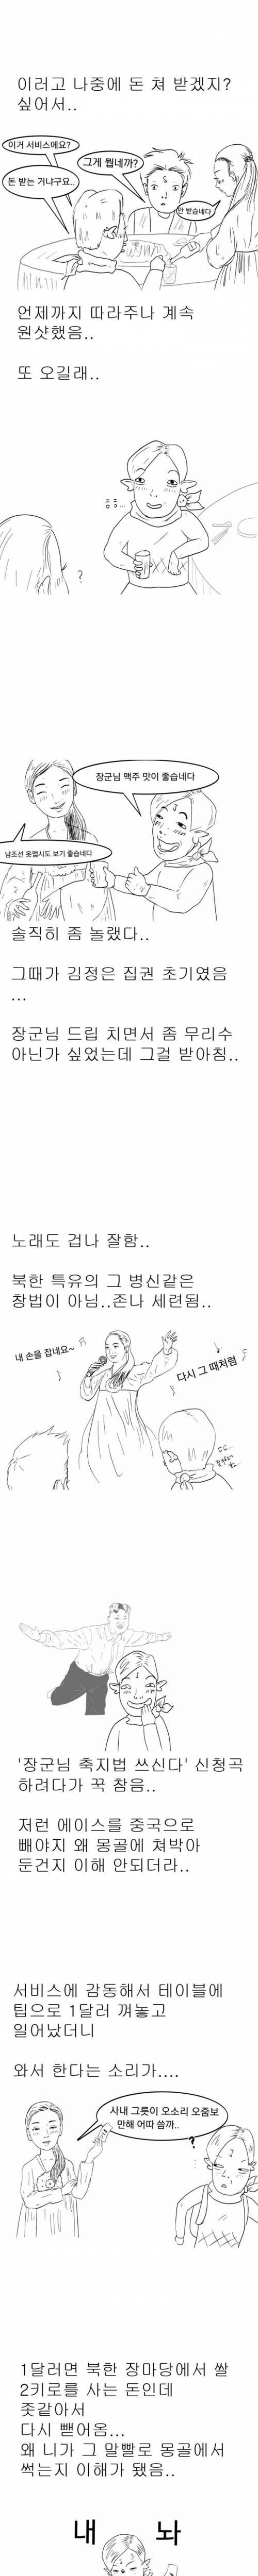 [스압]주갤러의 몽골여행 만화.jpg